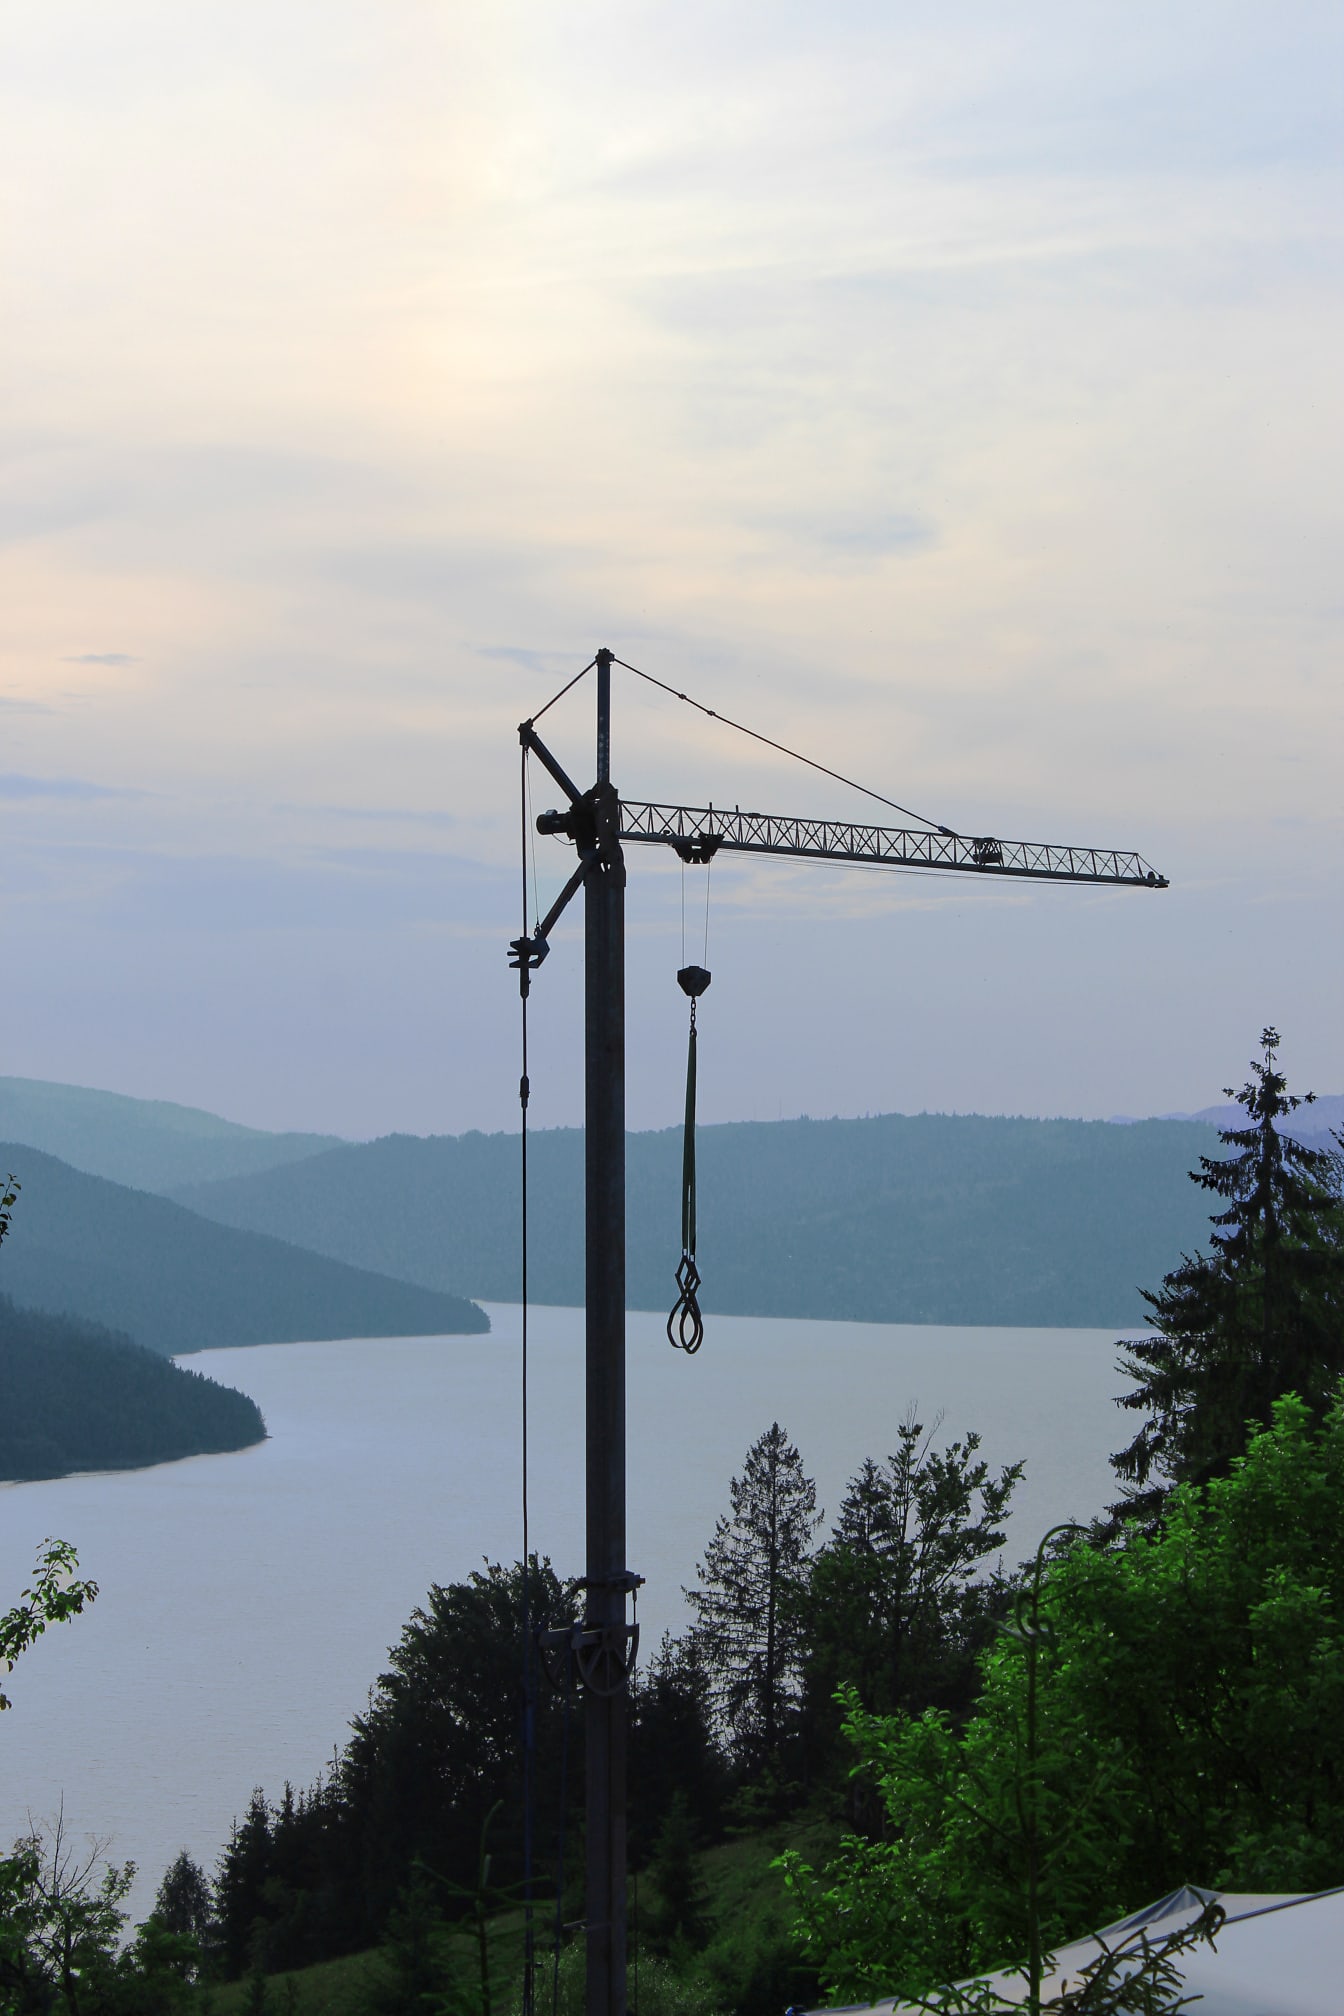 Висок промишлен кран в планините край езеро